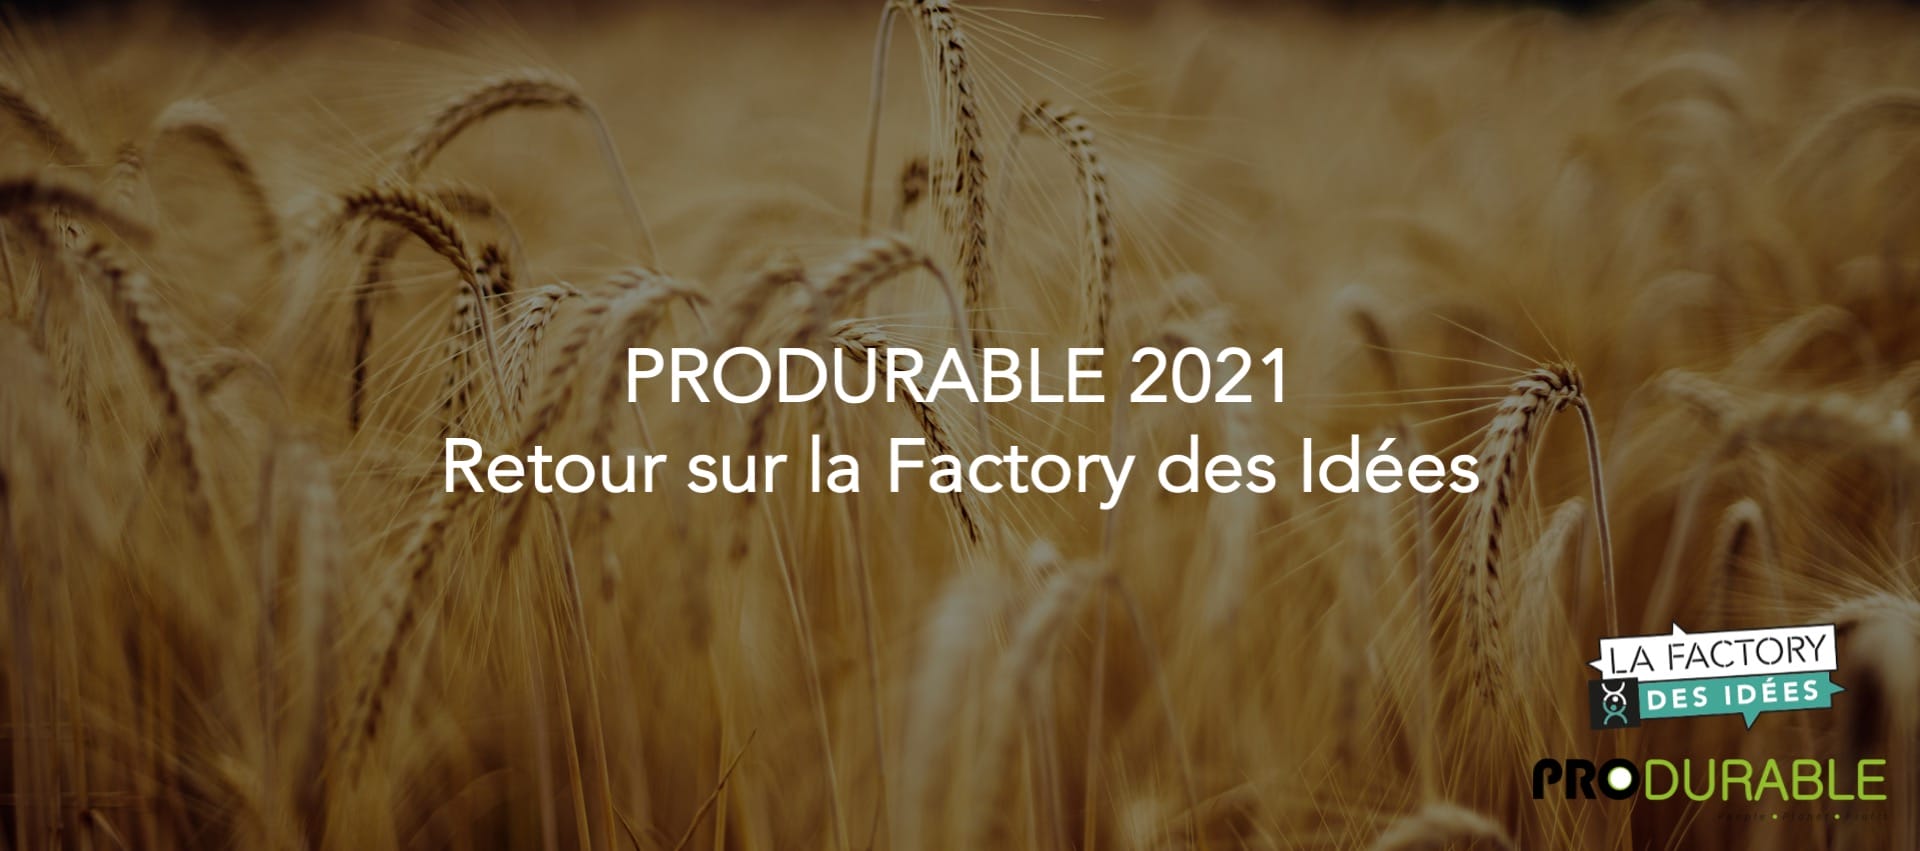 Les engagements du Groupe Panzani pour la filière blé dur française